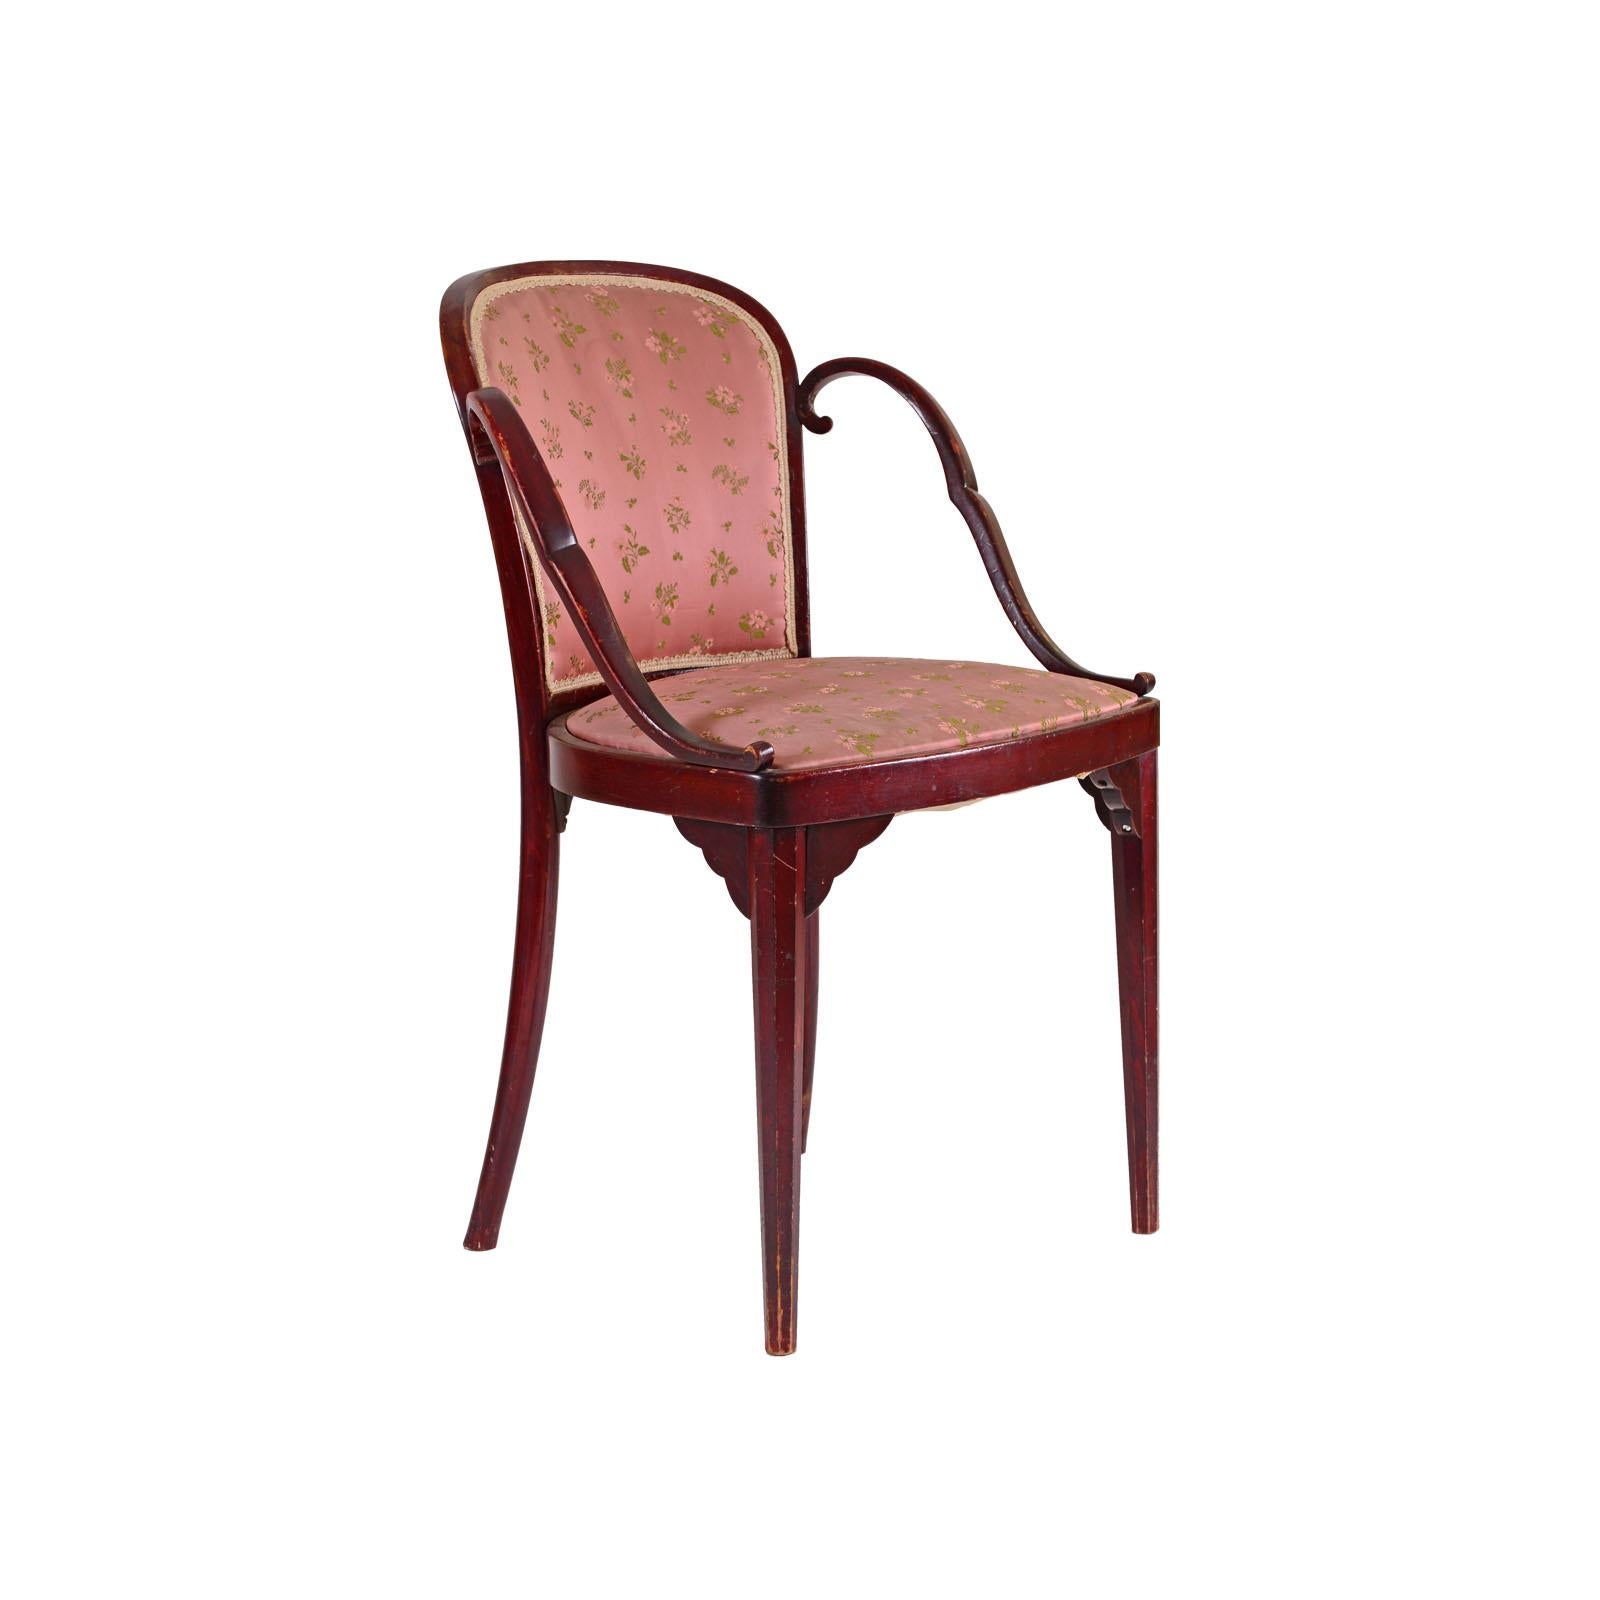 Austrian Original Josef Hoffmann & Kohn Jacob Chair from 1914 For Sale